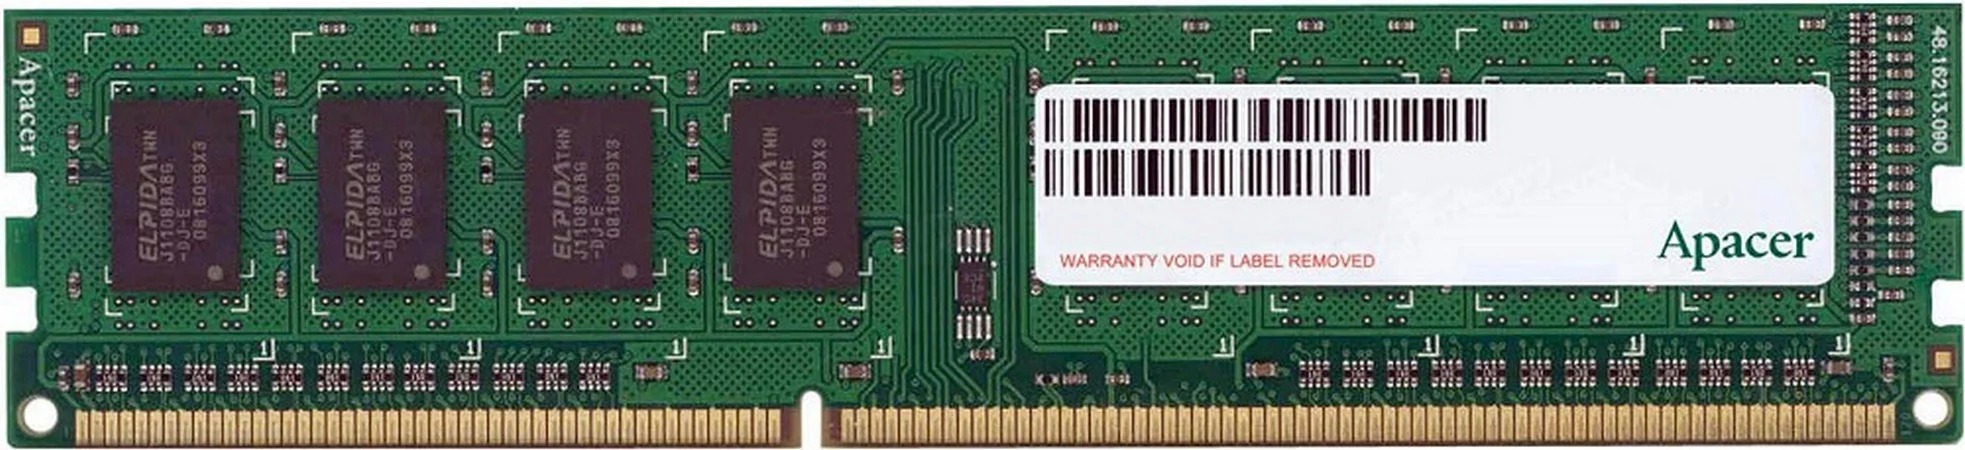 Dimm apacer. 4 ГБ, ddr3, DIMM, 1600 МГЦ. Apacer au08gfa60catbgc. Apacer 8 ГБ ddr3 1600 МГЦ SODIMM cl11 as08gfa60catbgc. Оперативная память ddr3 8gb pc3 12800.